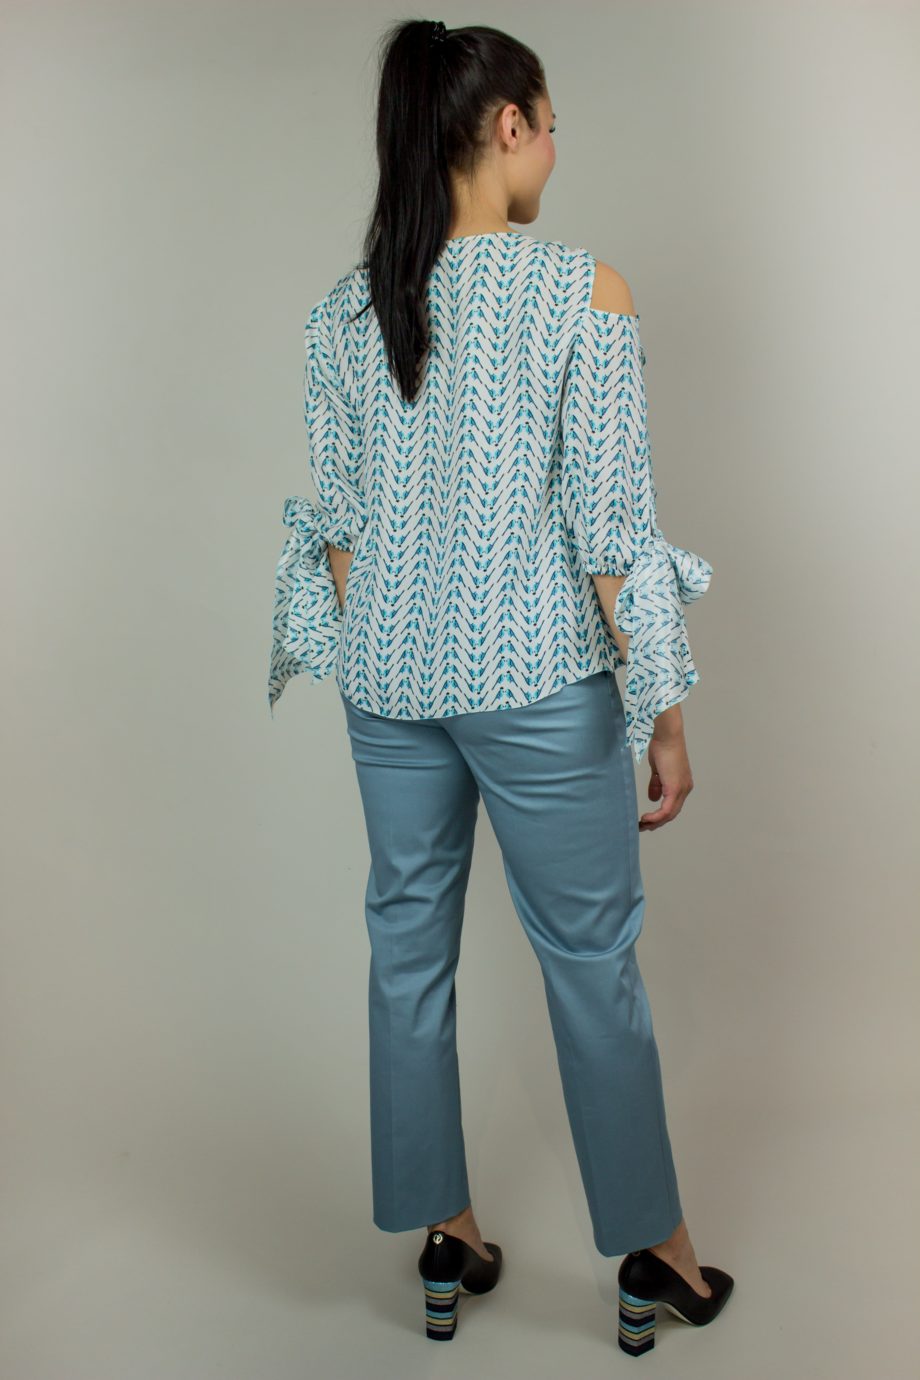 10. KRISTINA TI Turquoise silk blouse